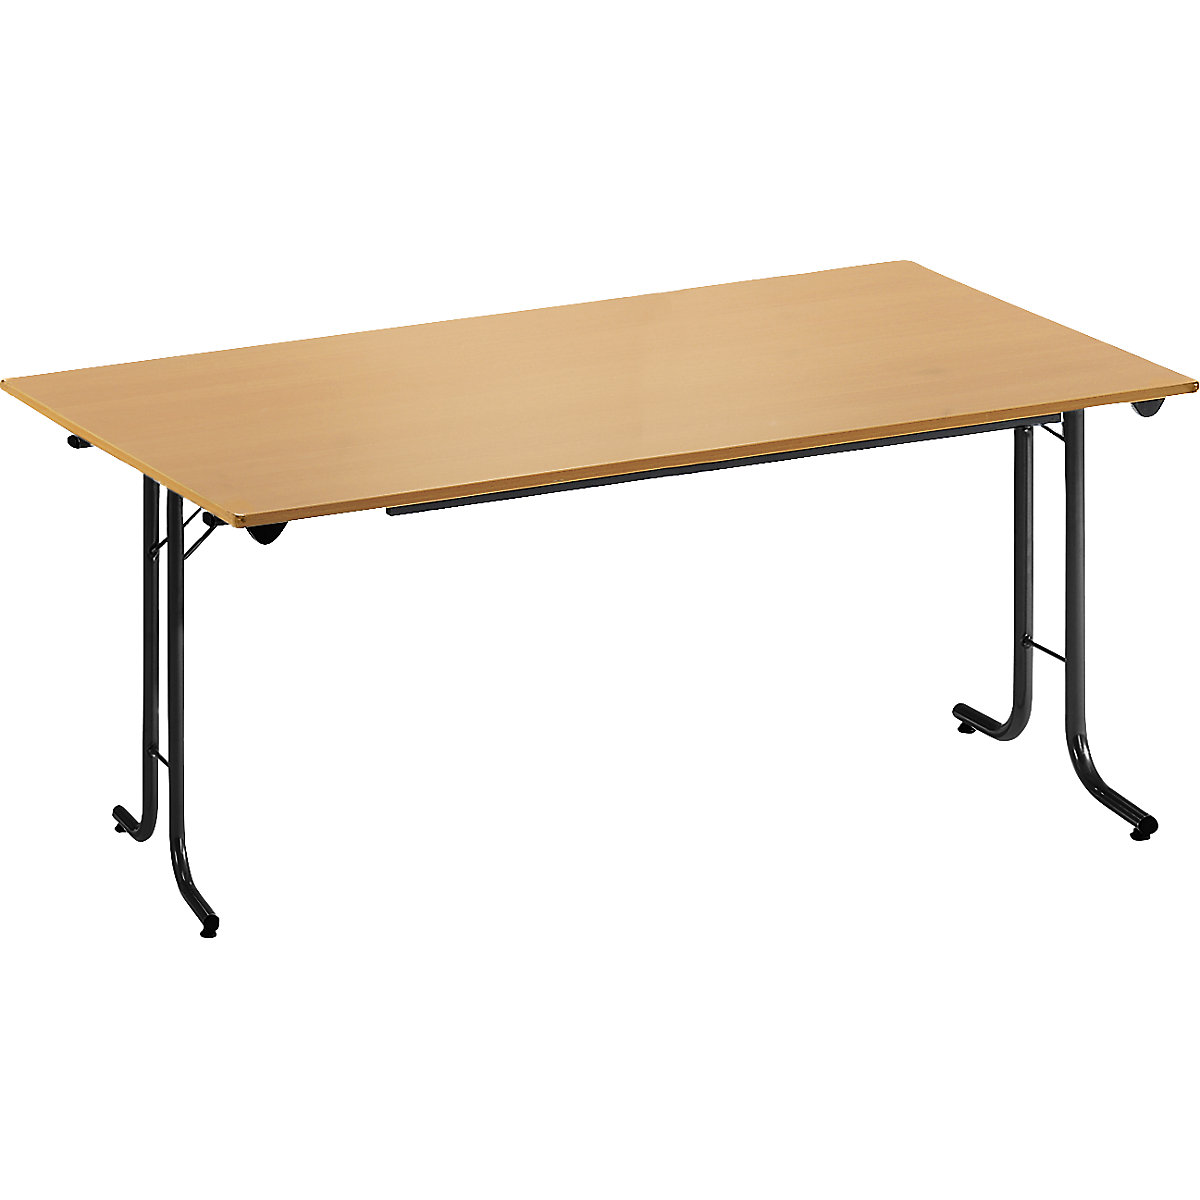 Sklápací stôl, so zaoblenými hranami, podstavec z kruhovej rúrky, tvar dosky obdĺžnikový, 1400 x 700 mm, podstavec čierna, doska vzor buk-10